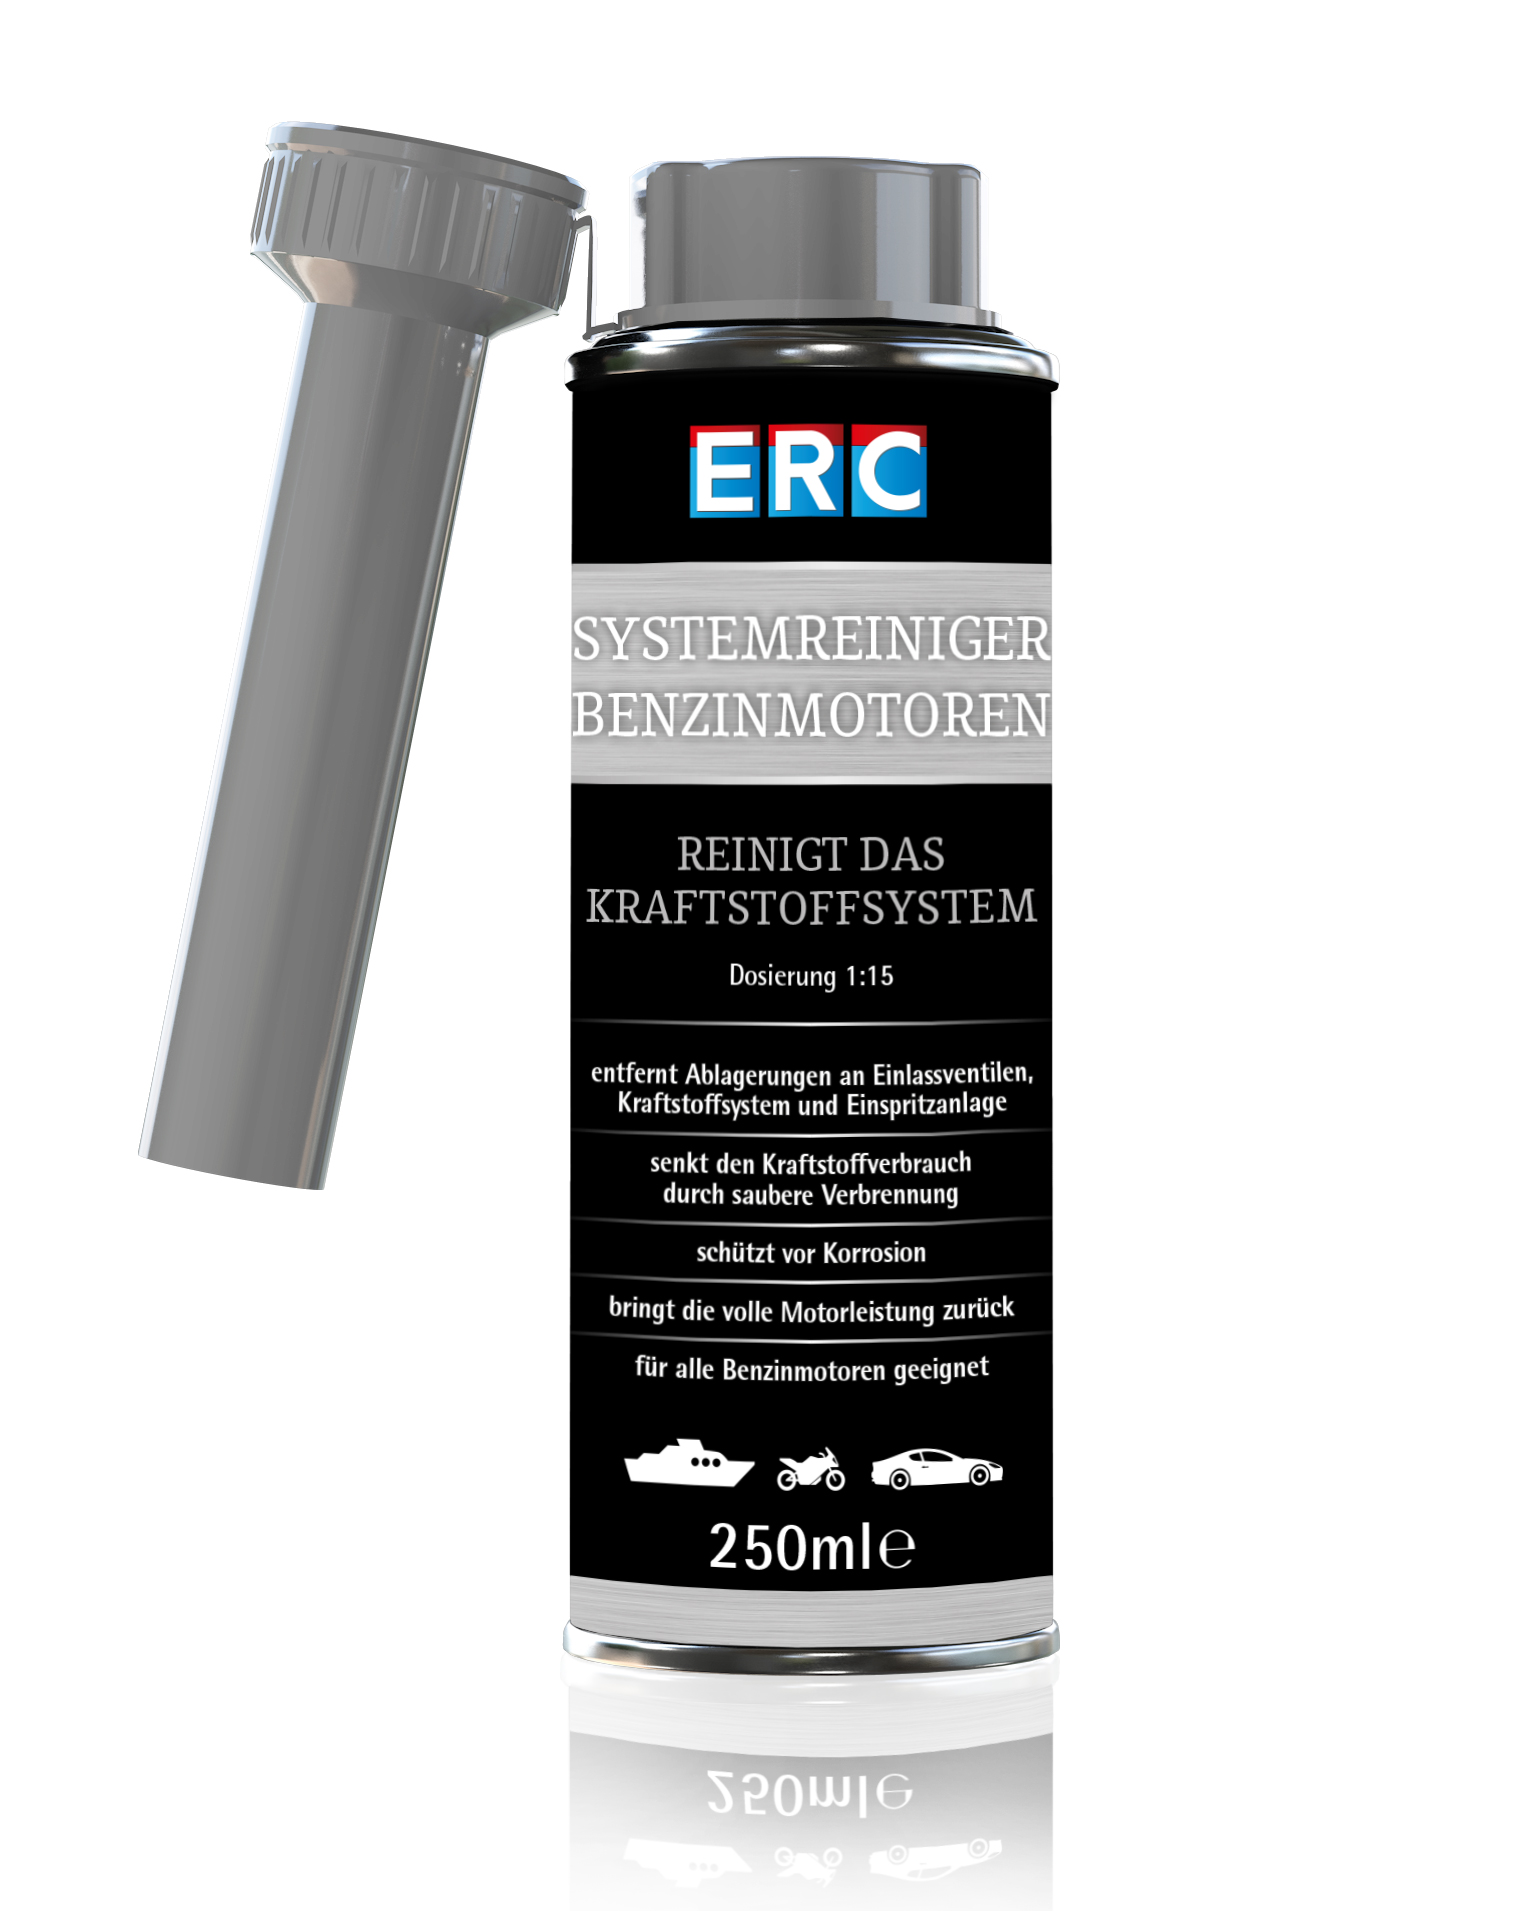 1 x 250 ml ERC System Reiniger Benzinmotoren Benzin Reiniger Benzinsystemreiniger